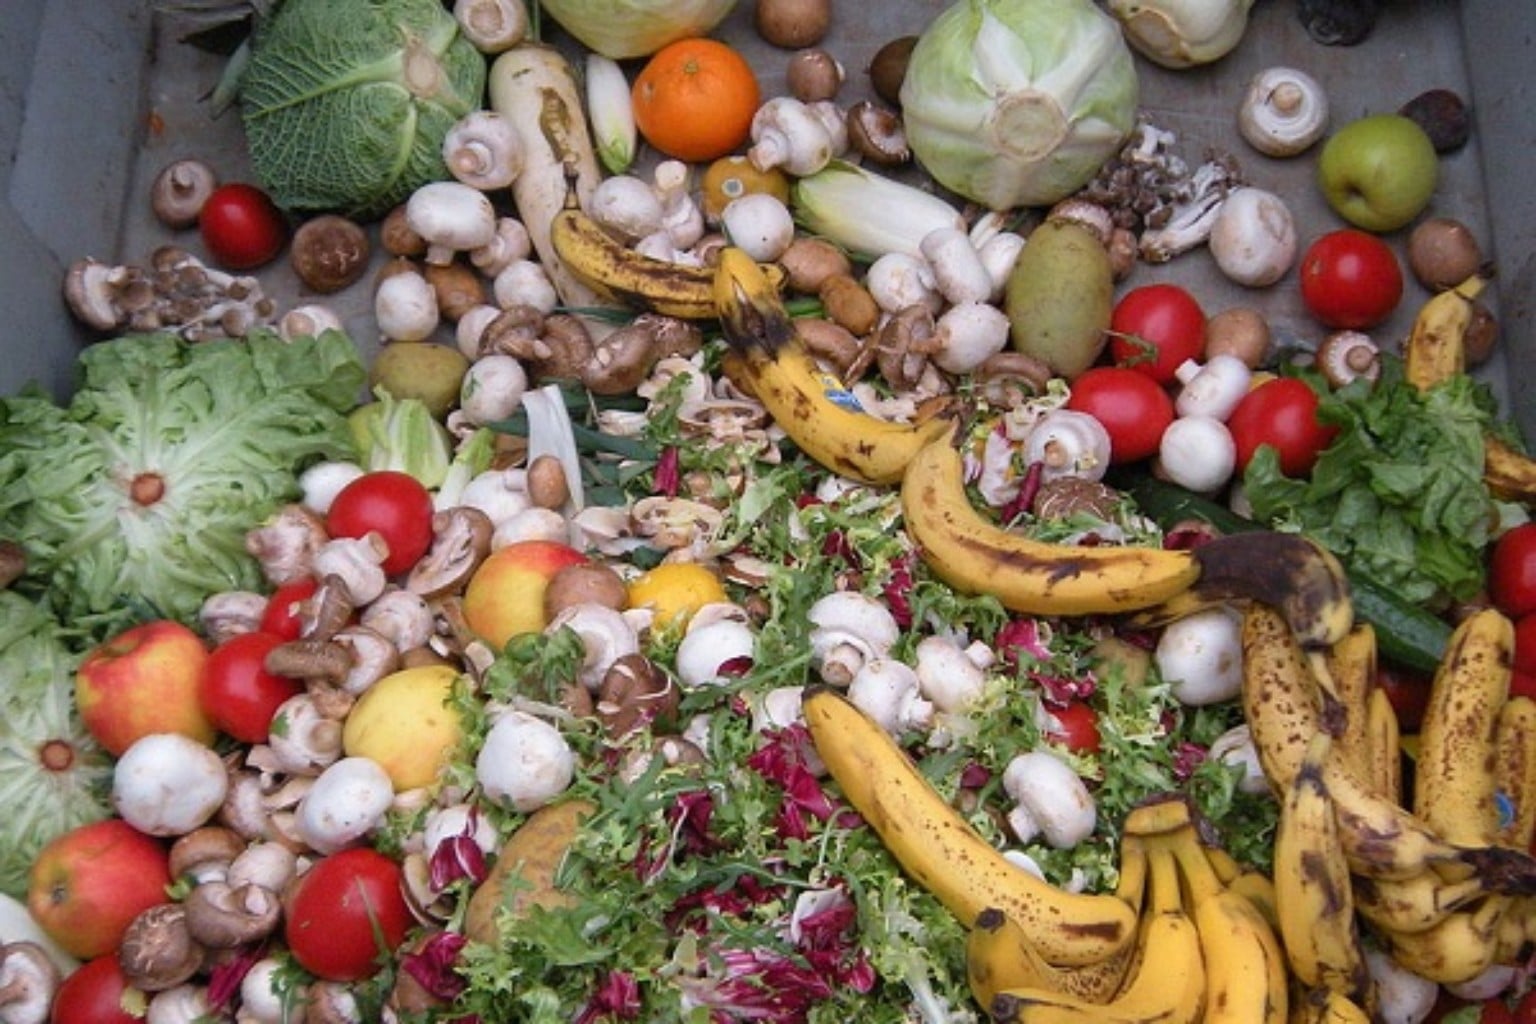 Reduzir Desperdício De Alimentos Pode Reduzir Danos Ao Meio Ambiente E Aumentar Segurança 5449